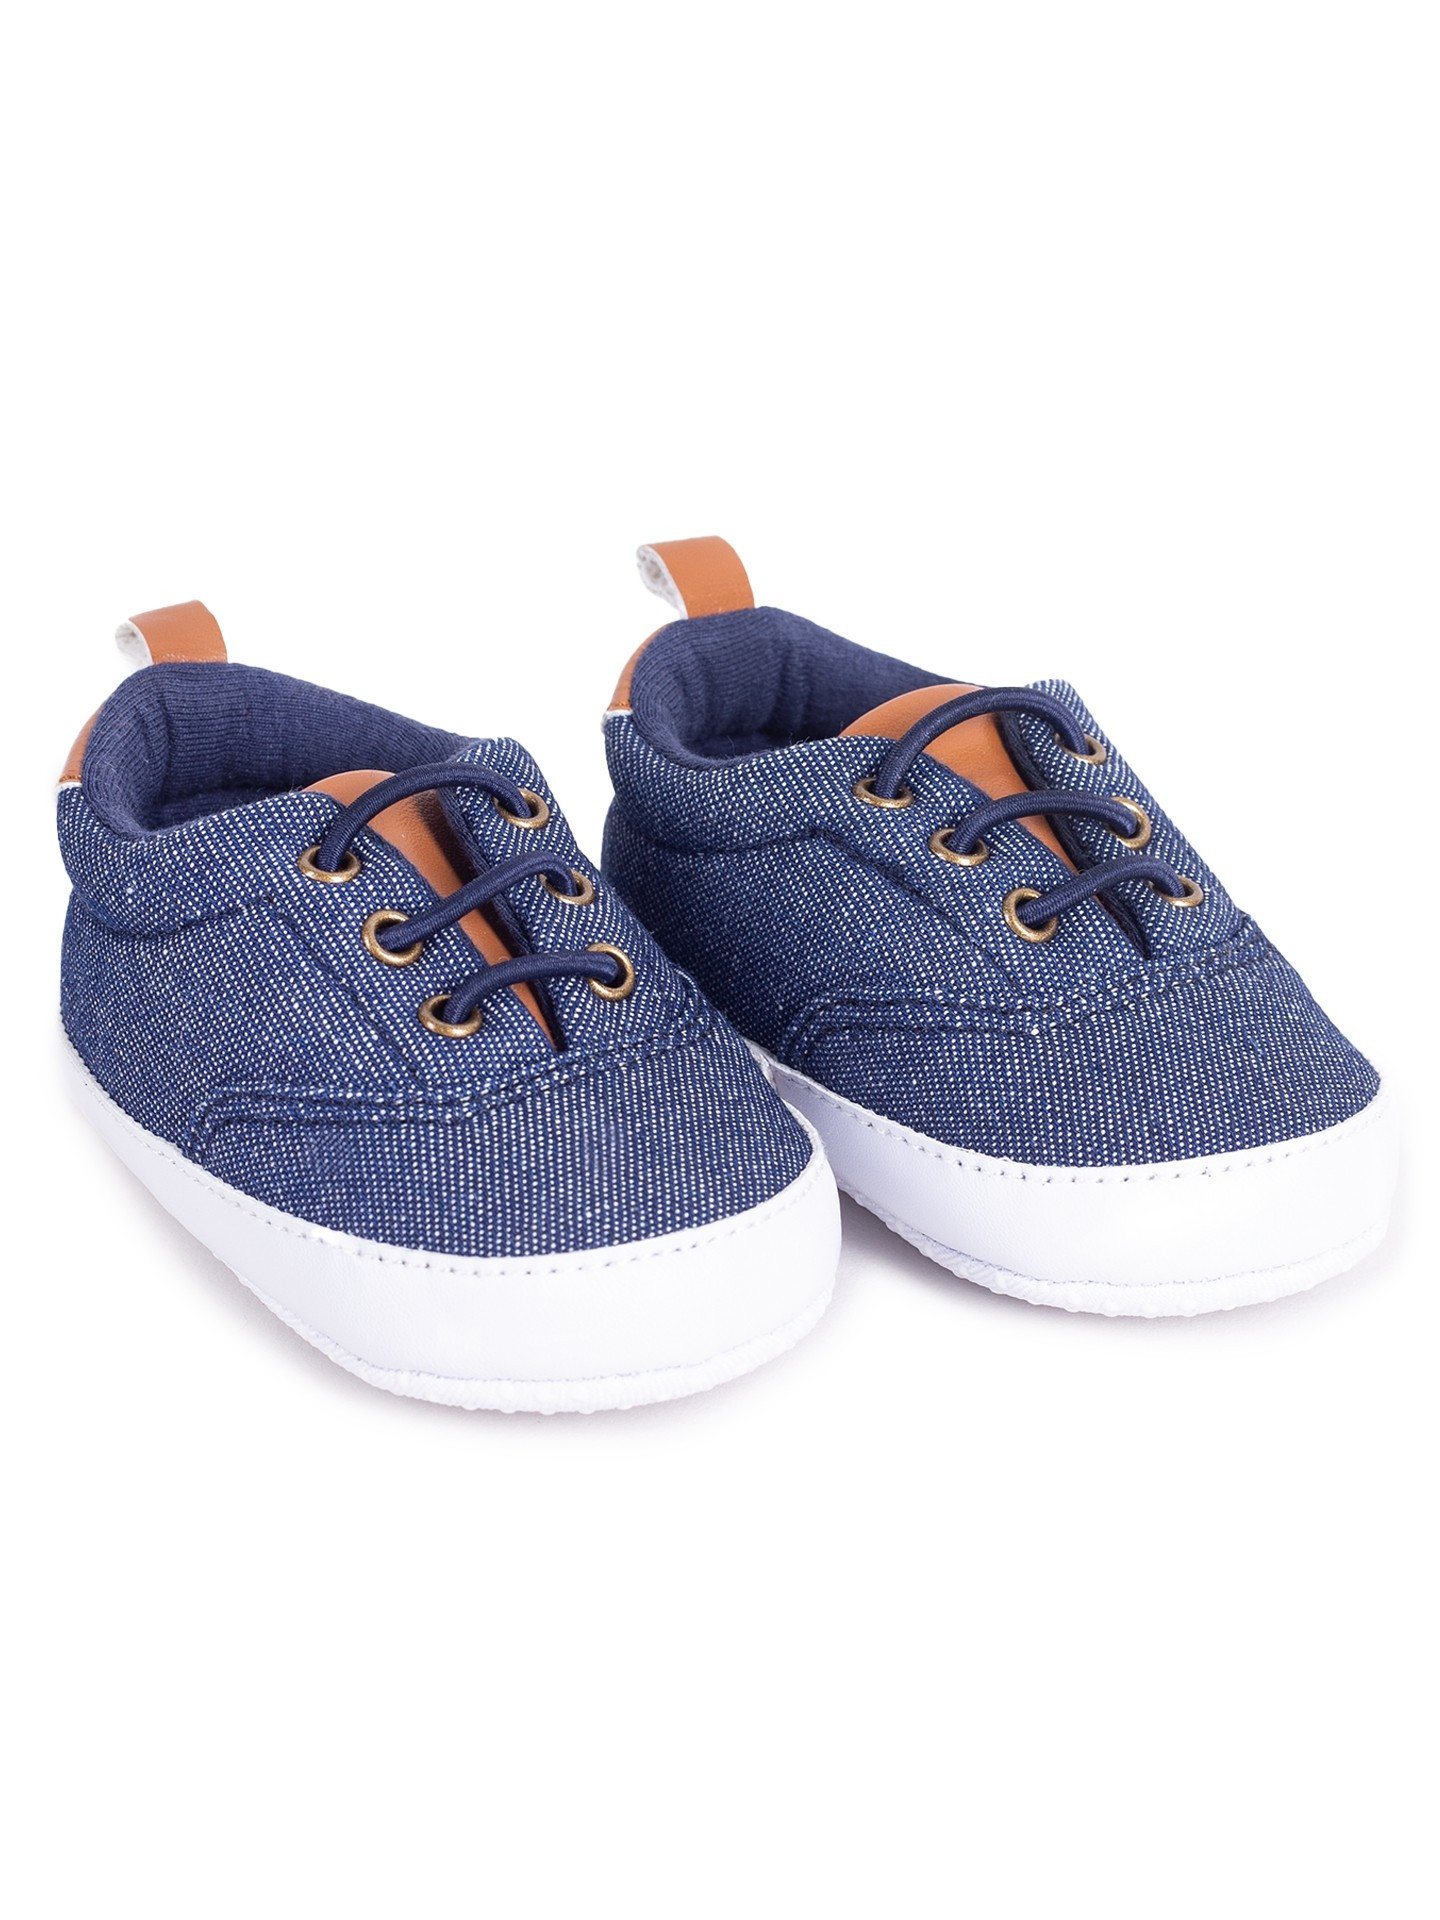 Yoclub Dětské chlapecké boty OBO-0215C-1800 Denim 0-6 měsíců